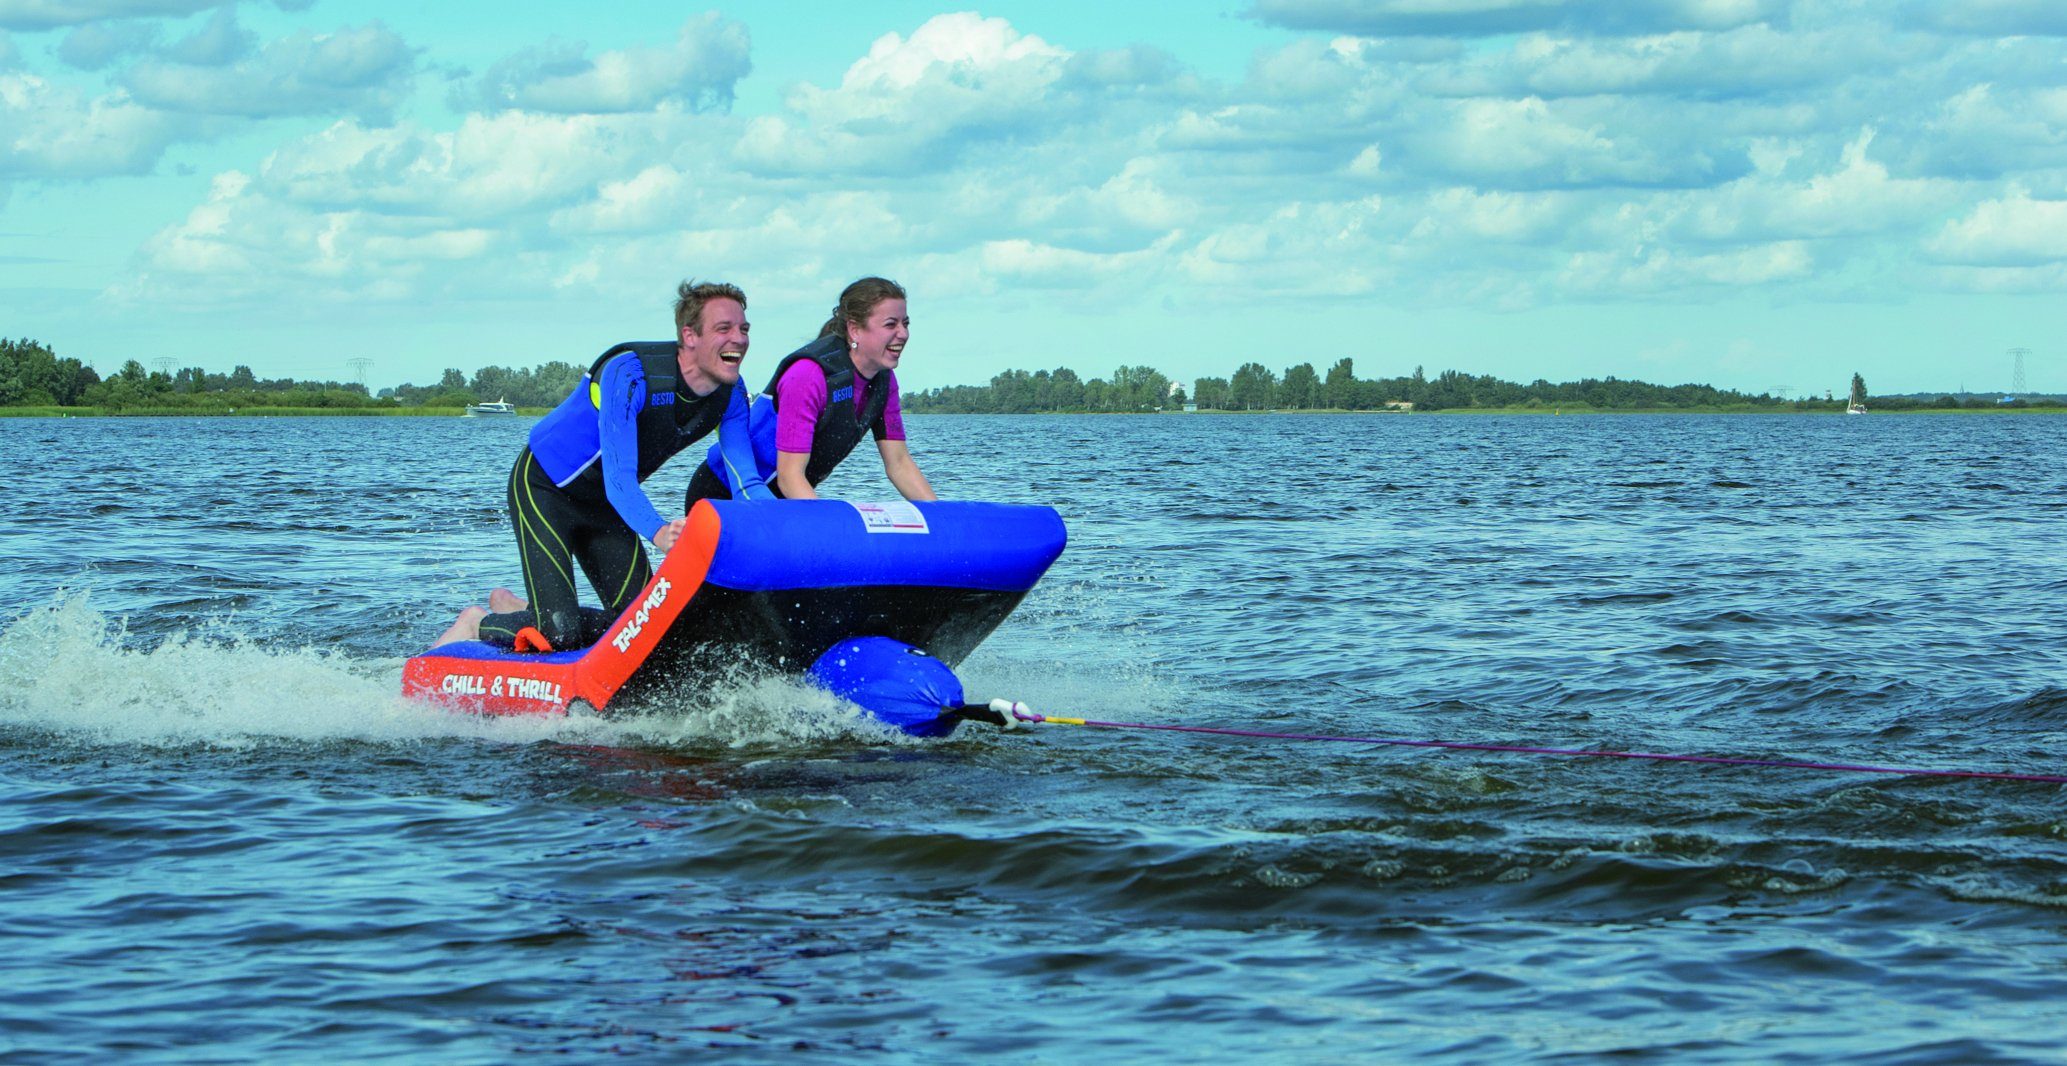 Nautilo Bodyboard Wassersport FunTube Chill (1 zu Schleppring bis Thrill tlg) & für 2 Personen